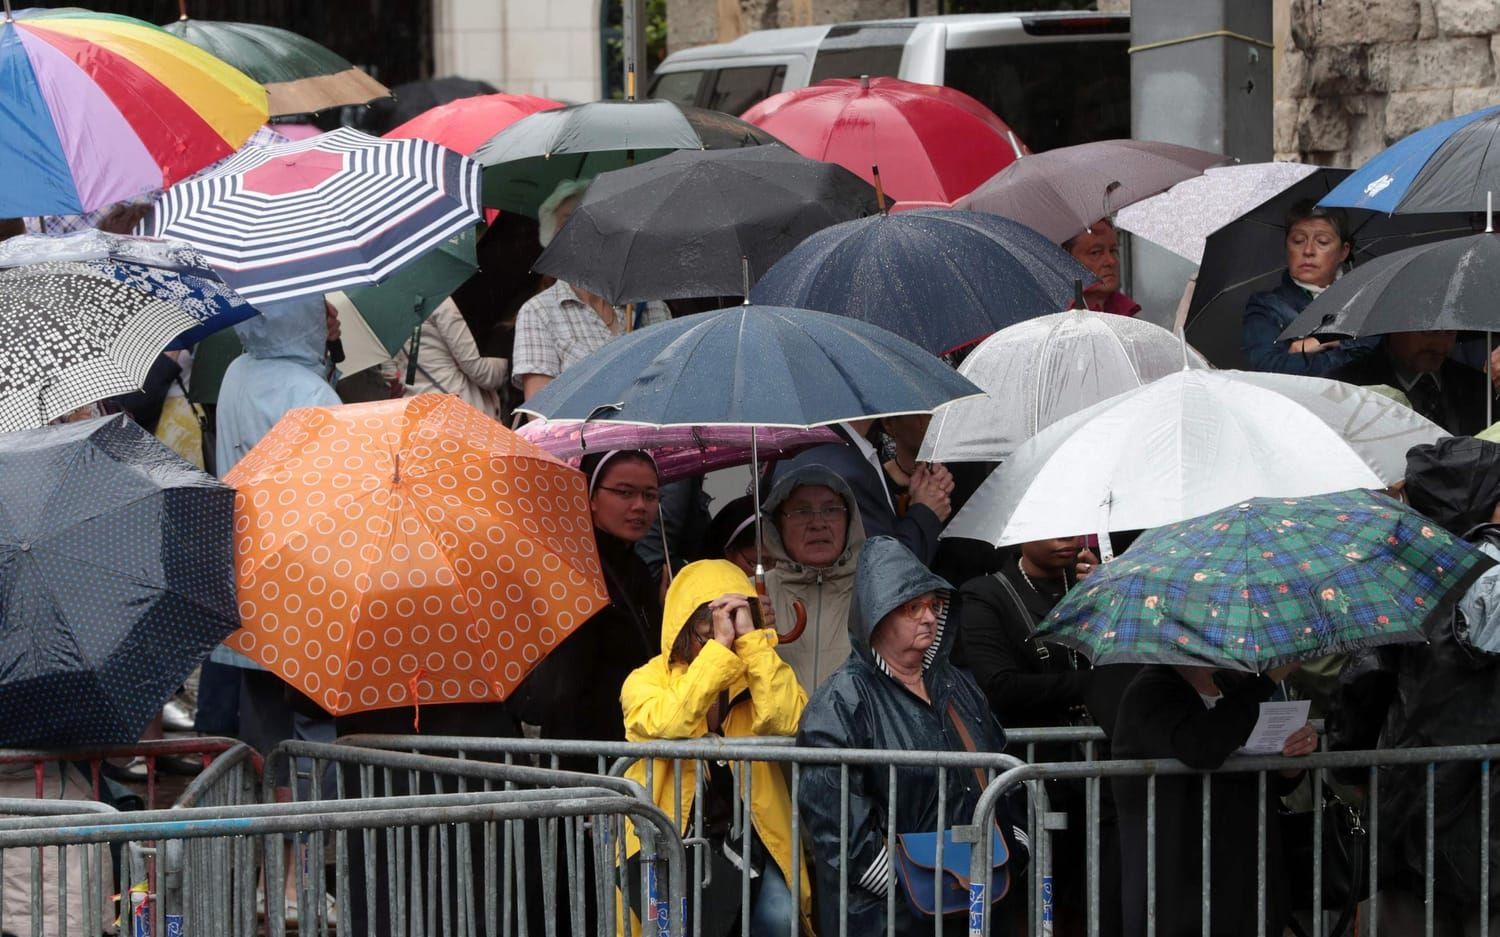 Tusentals trotsade regnet för att få en skymt av begravningen. Bild: TT